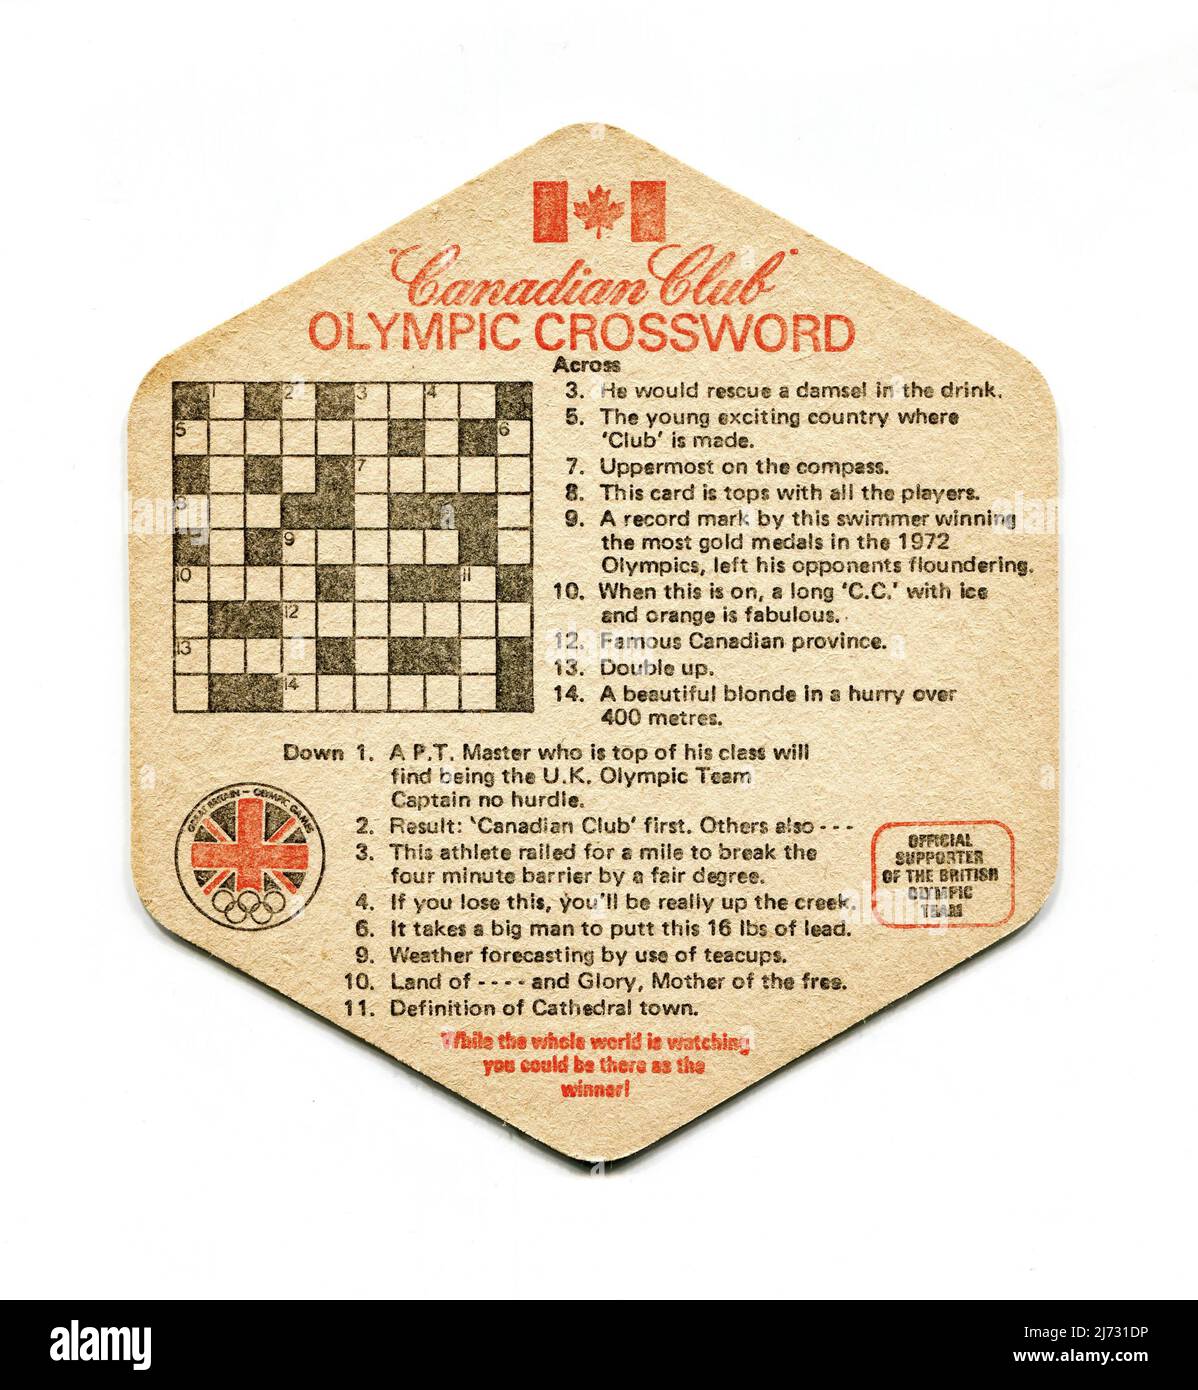 Eine Vintage-Biermatte, die als Werbeartikel für den Canadian Club Whisky hergestellt wird und das Sponsoring des britischen Olympischen Teams im Vorfeld der Olympischen Sommerspiele 1976 in Montreal bewirbt. Das Design enthält ein Kreuzworträtsel. Stockfoto